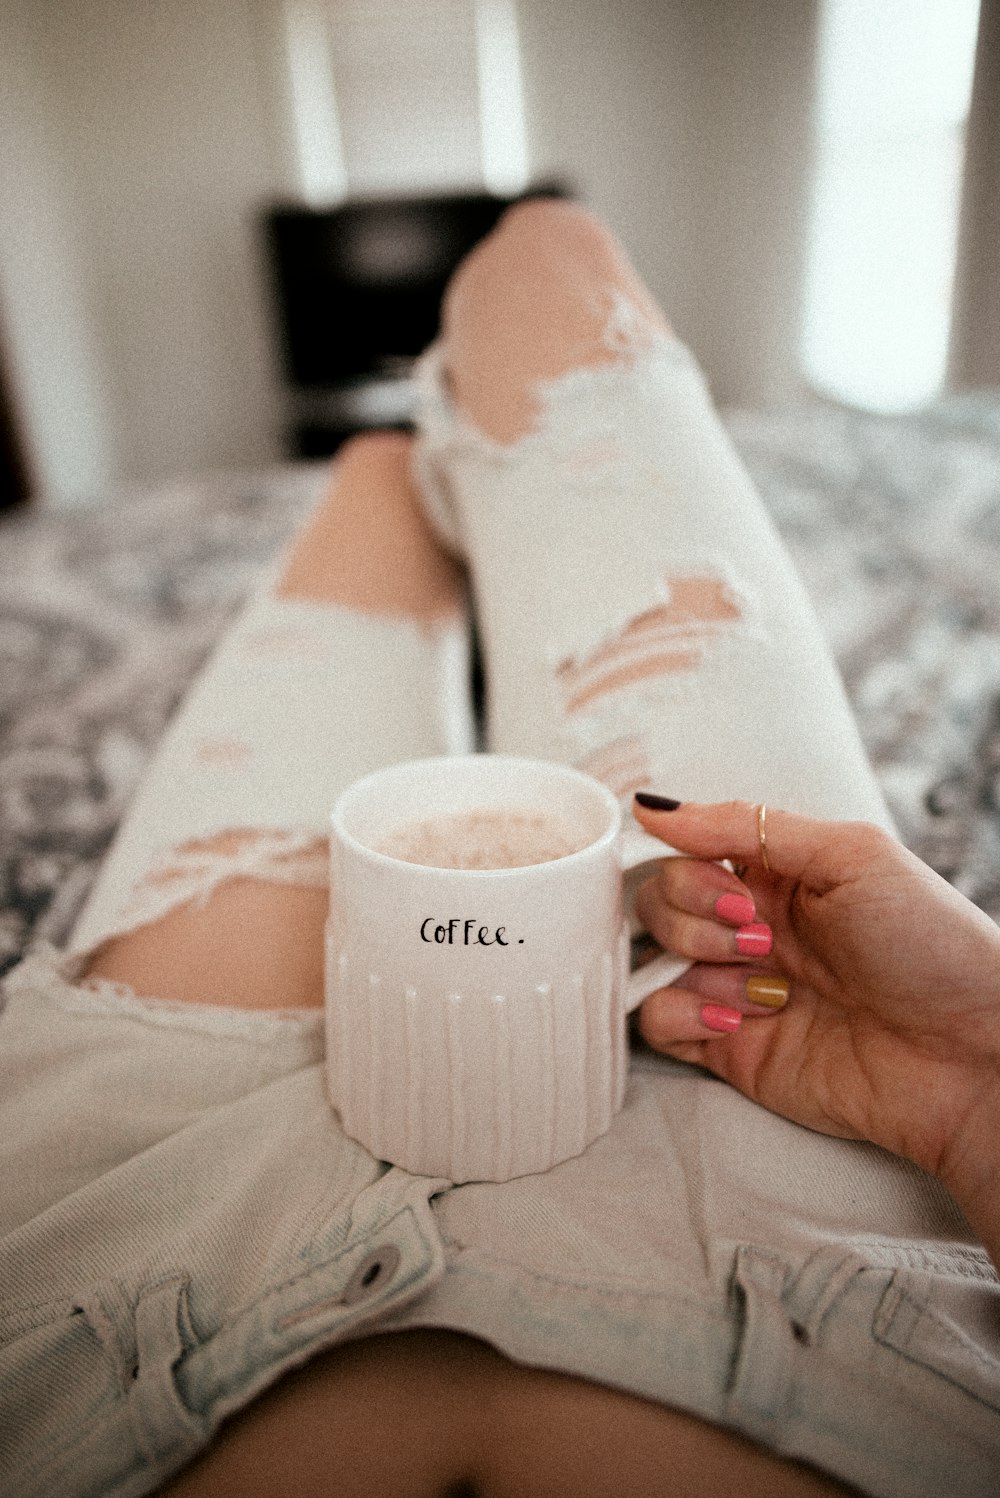 persona sosteniendo una taza de cerámica blanca con café